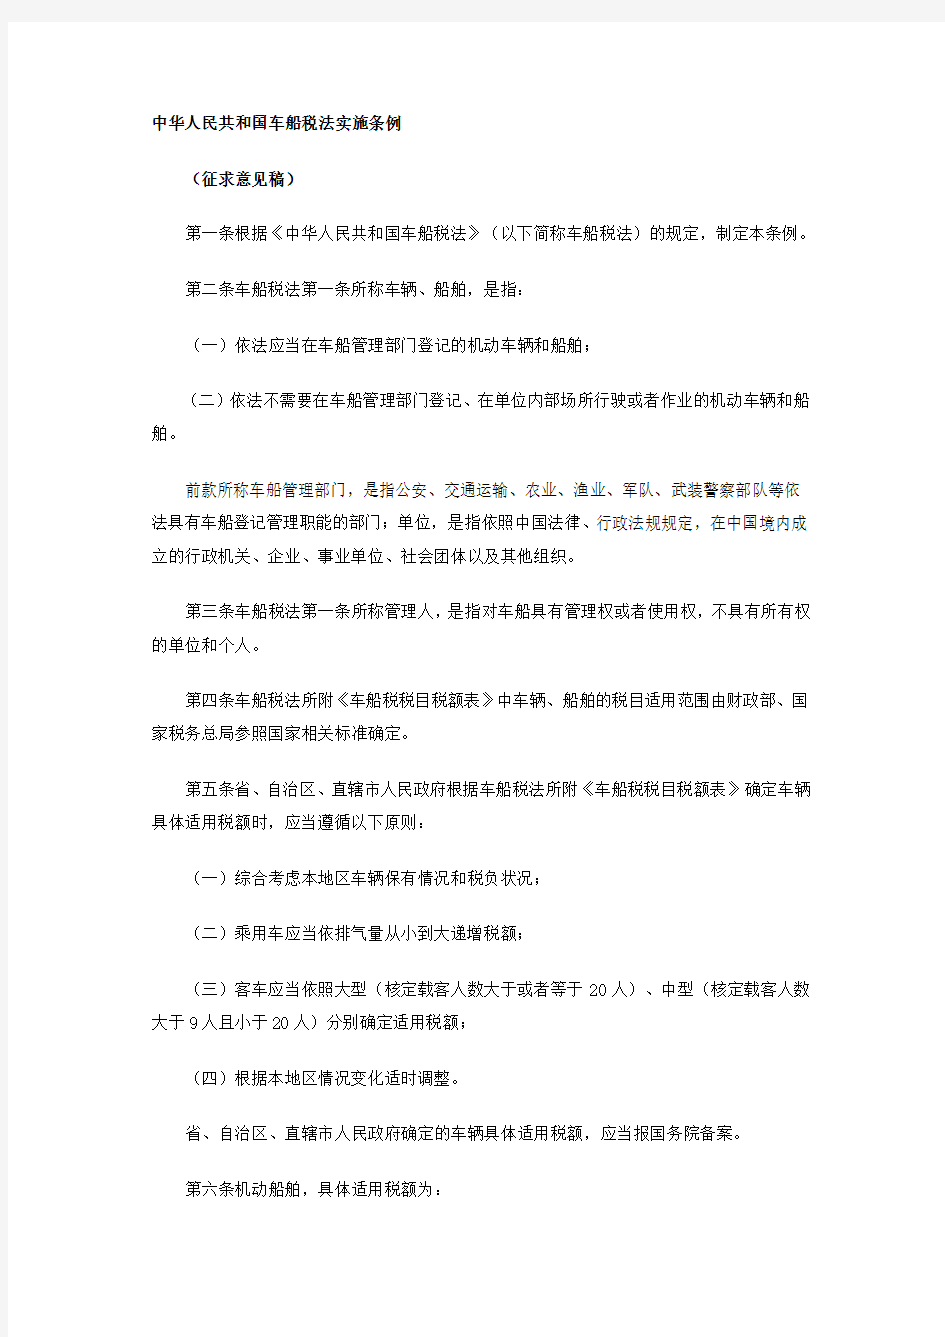 中华人民共和国车船税法实施条例征求意见稿